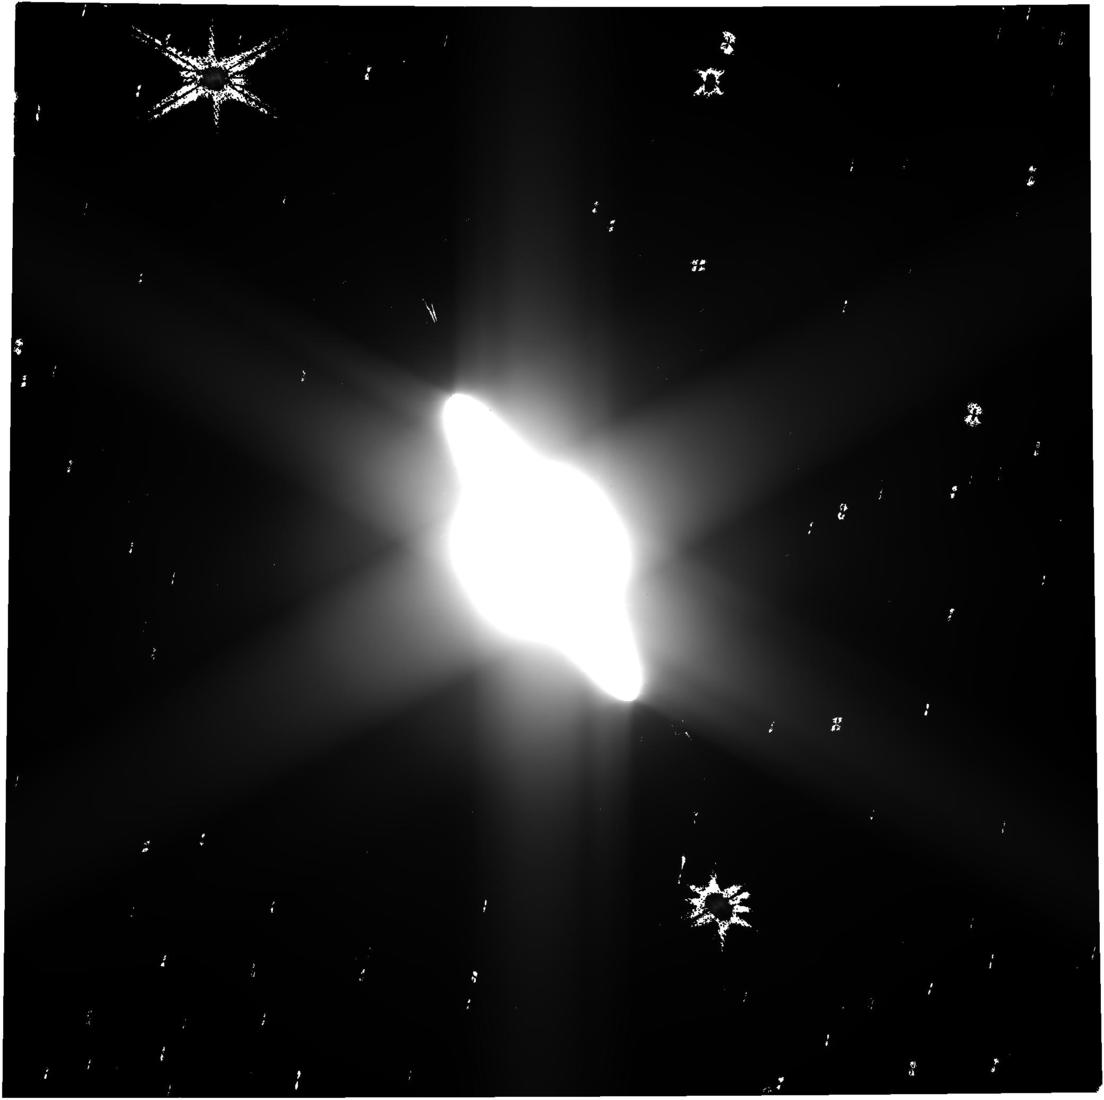 Primeras imágenes sin procesar de Saturno tomadas por el James Webb Space Telescope